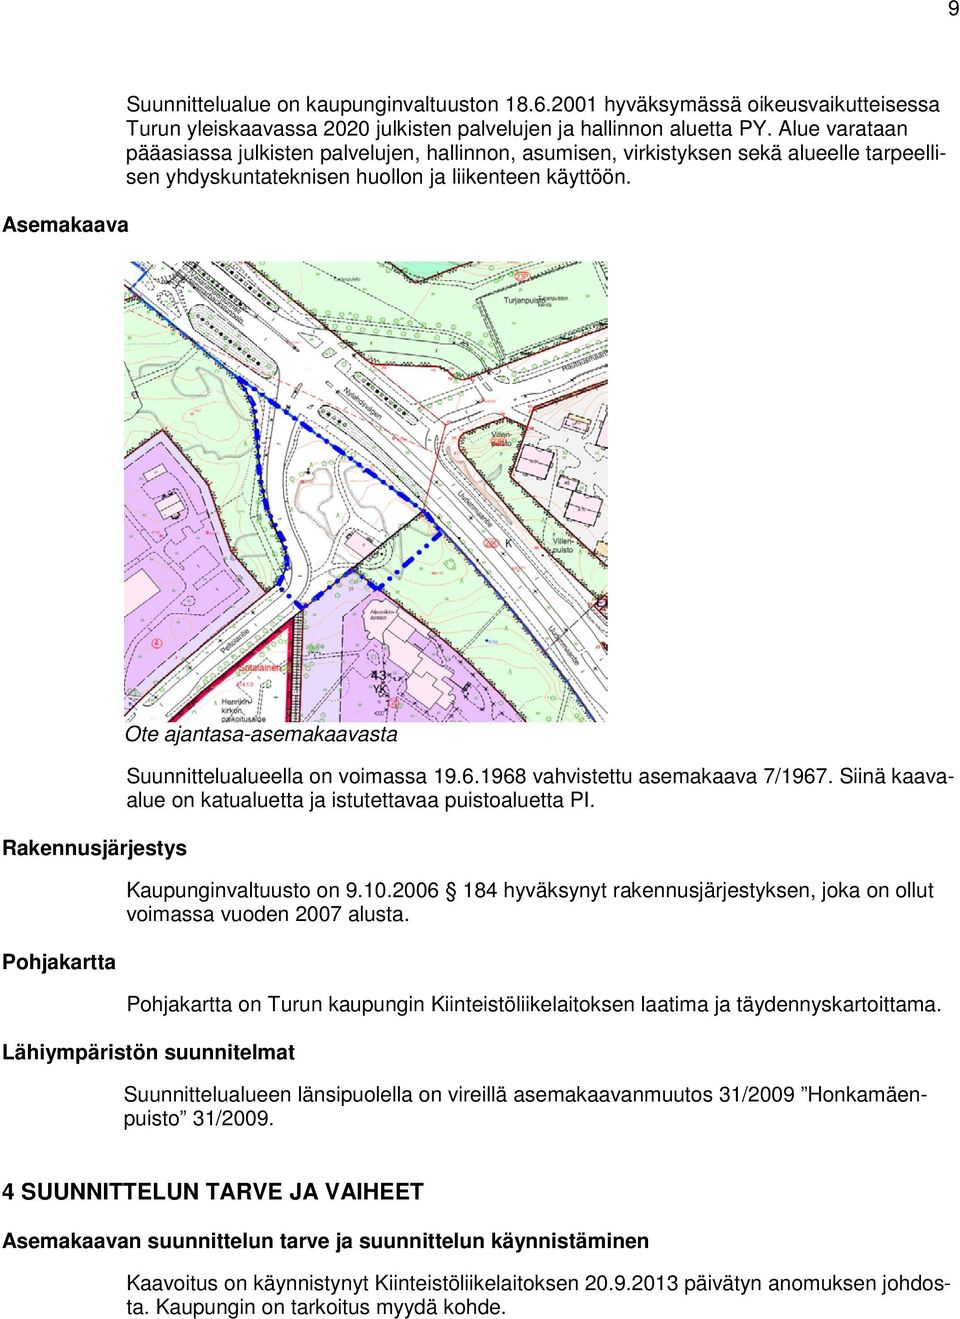 Rakennusjärjestys Pohjakartta Ote ajantasa-asemakaavasta Suunnittelualueella on voimassa 19.6.1968 vahvistettu asemakaava 7/1967. Siinä kaavaalue on katualuetta ja istutettavaa puistoaluetta PI.